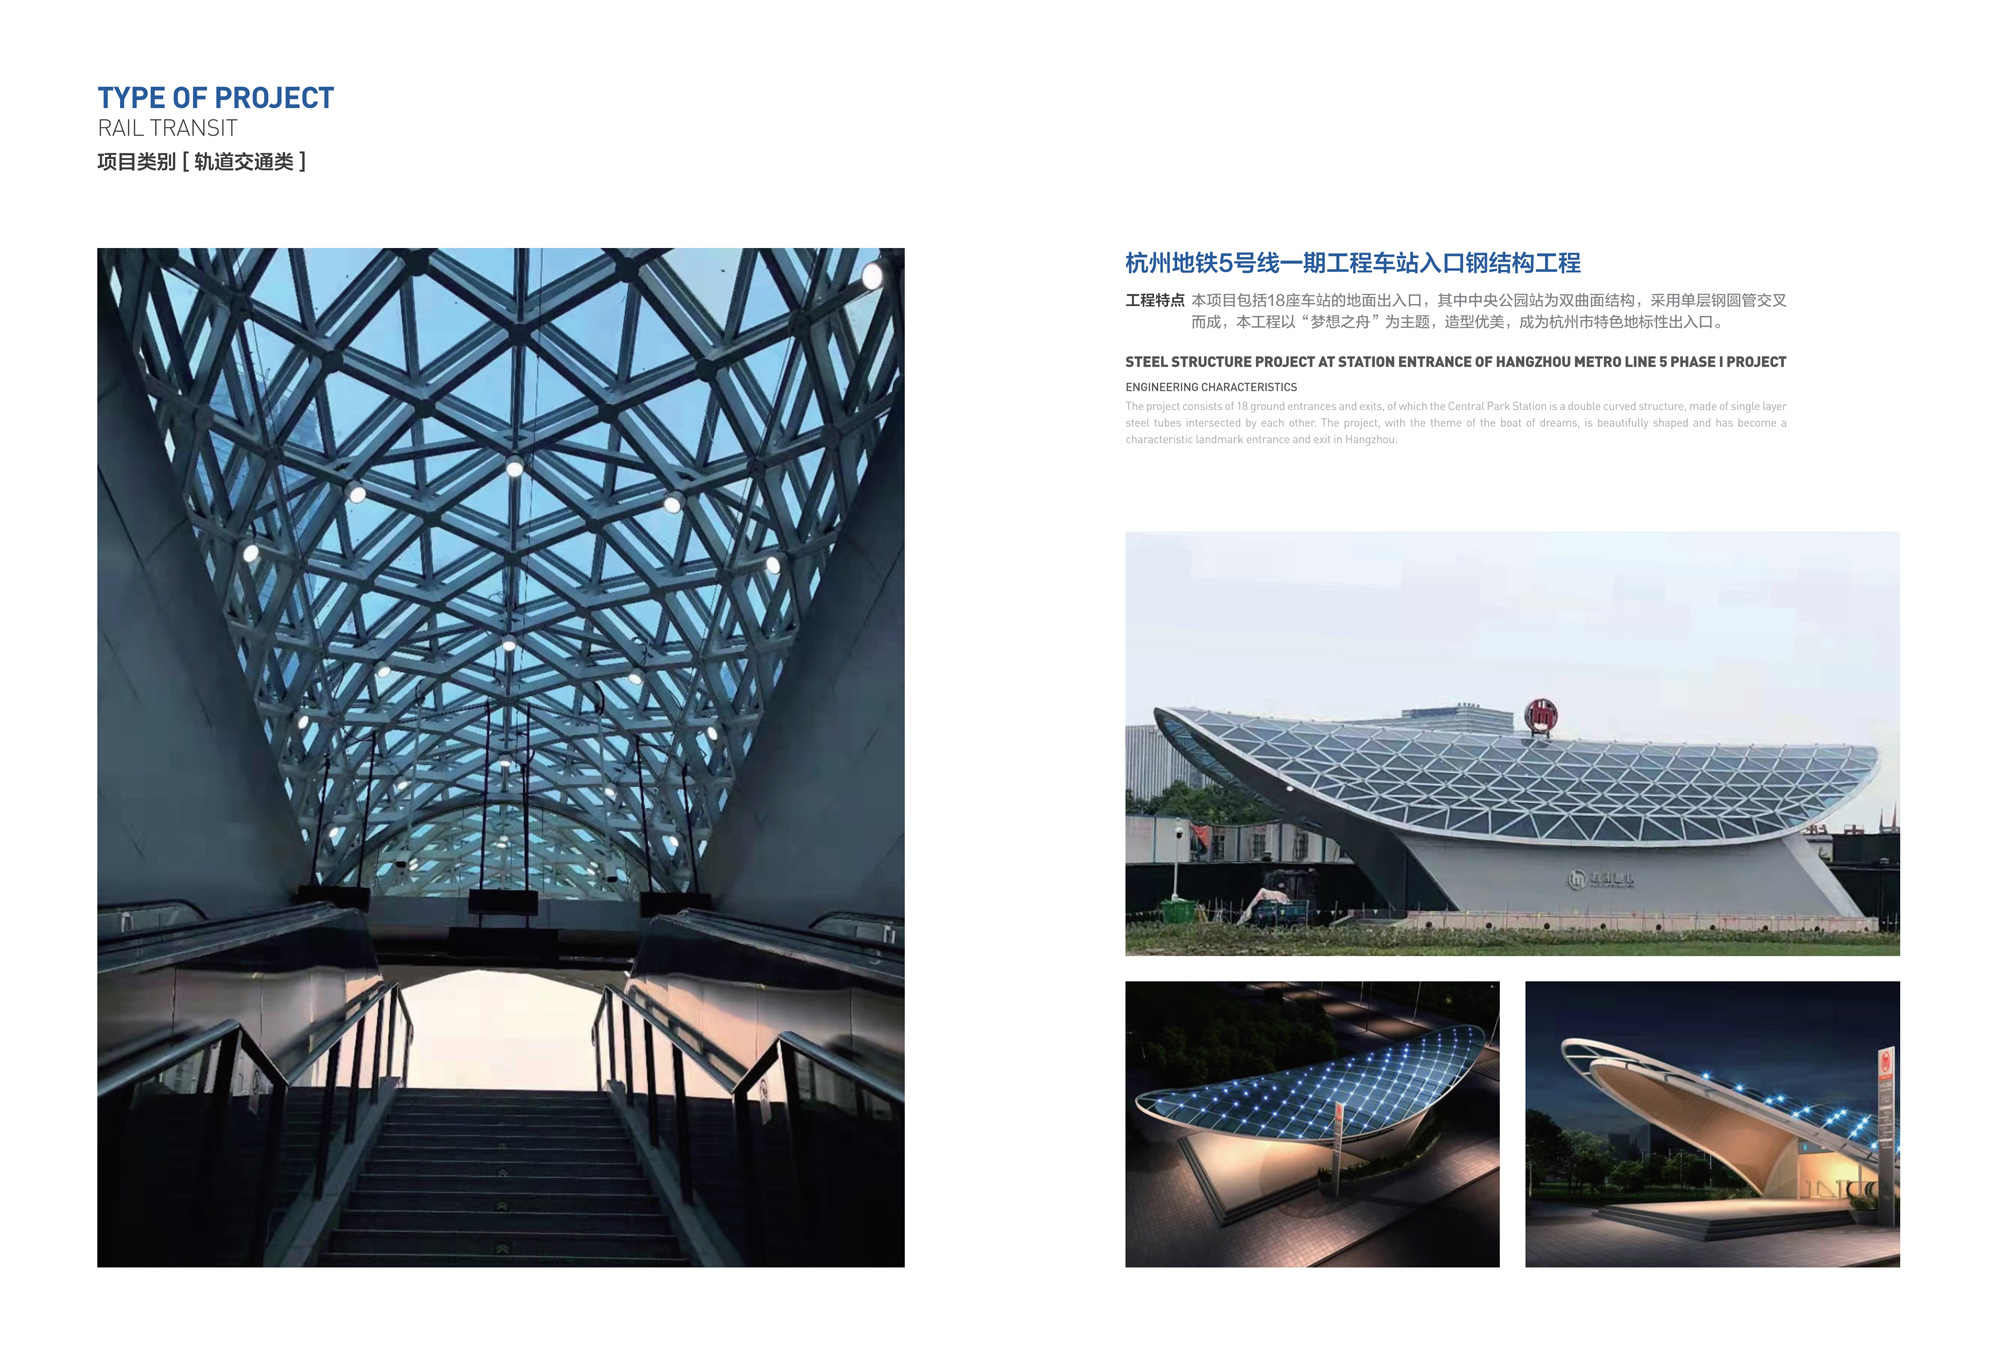 杭州地铁5号线一期工程车站入口钢结构工程